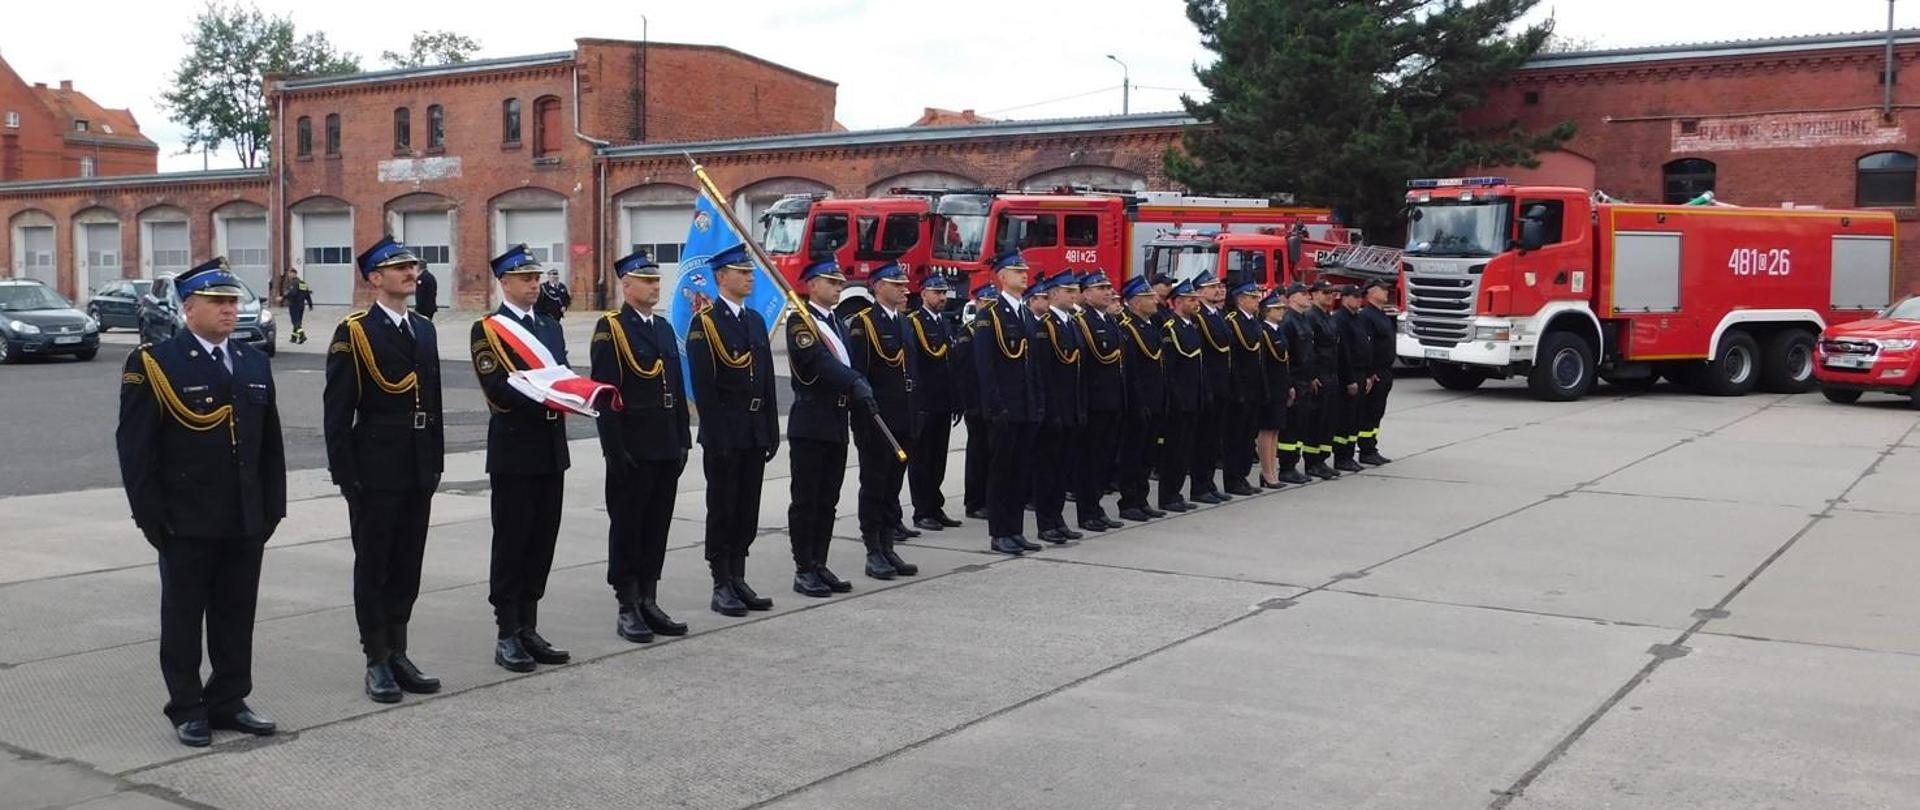 Zdjęcie przedstawia pododdział strażaków na uroczystym apelu z okazji Dnia Strażaka. Na zdjęciu widoczni strażacy w mundurach galowych, poczet flagowy, poczet sztandarowy. W tle pojazdy pożarnicze